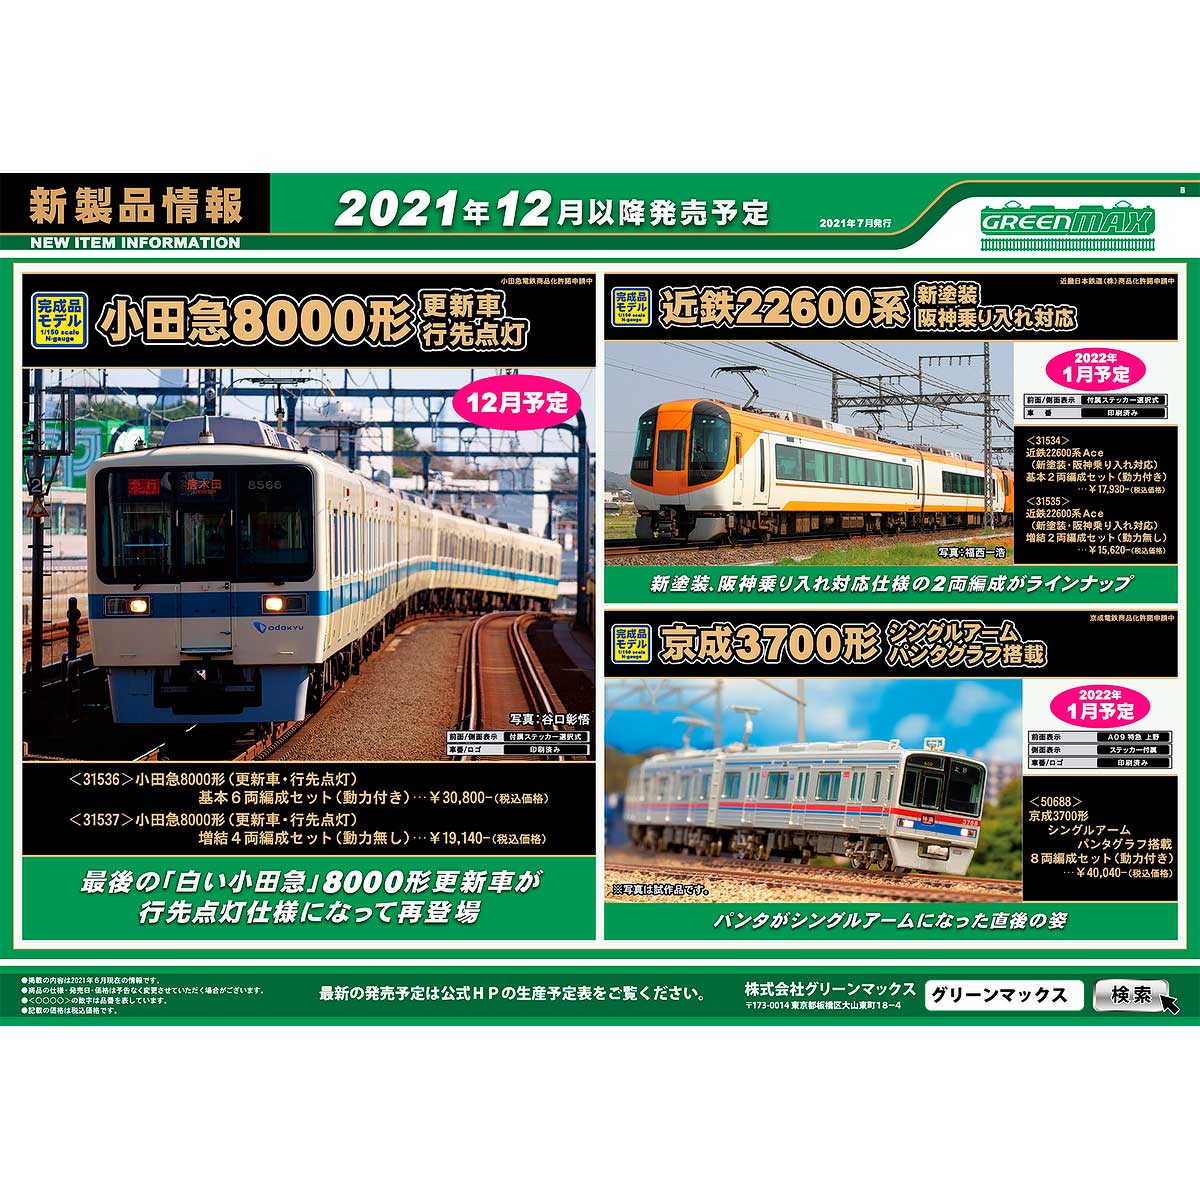 2021年7月7日発行B｜新製品情報ポスター｜Nゲージ鉄道模型のグリーンマックス